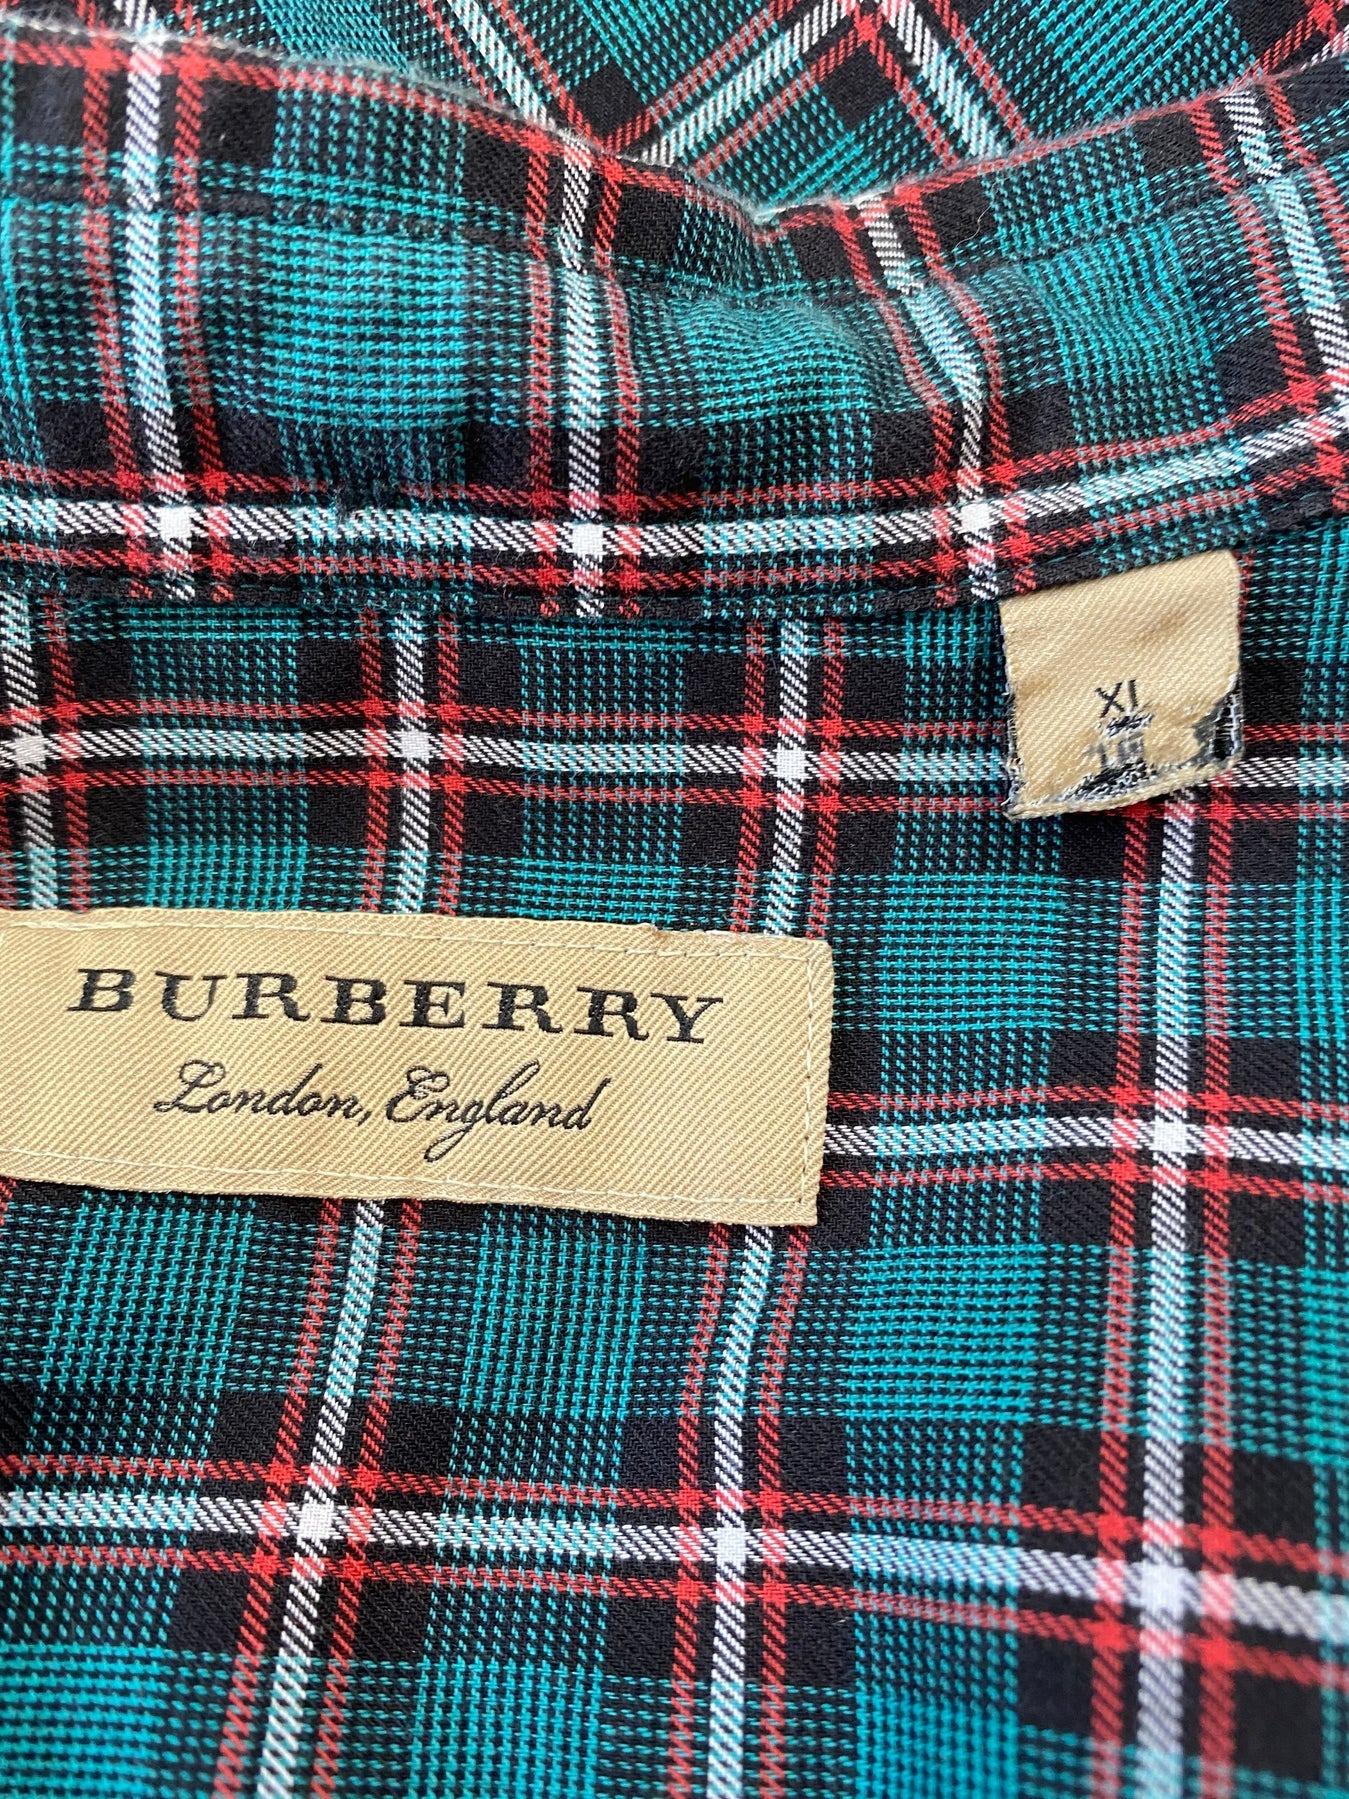 Burberry England Plaid Shirt For Sale 2